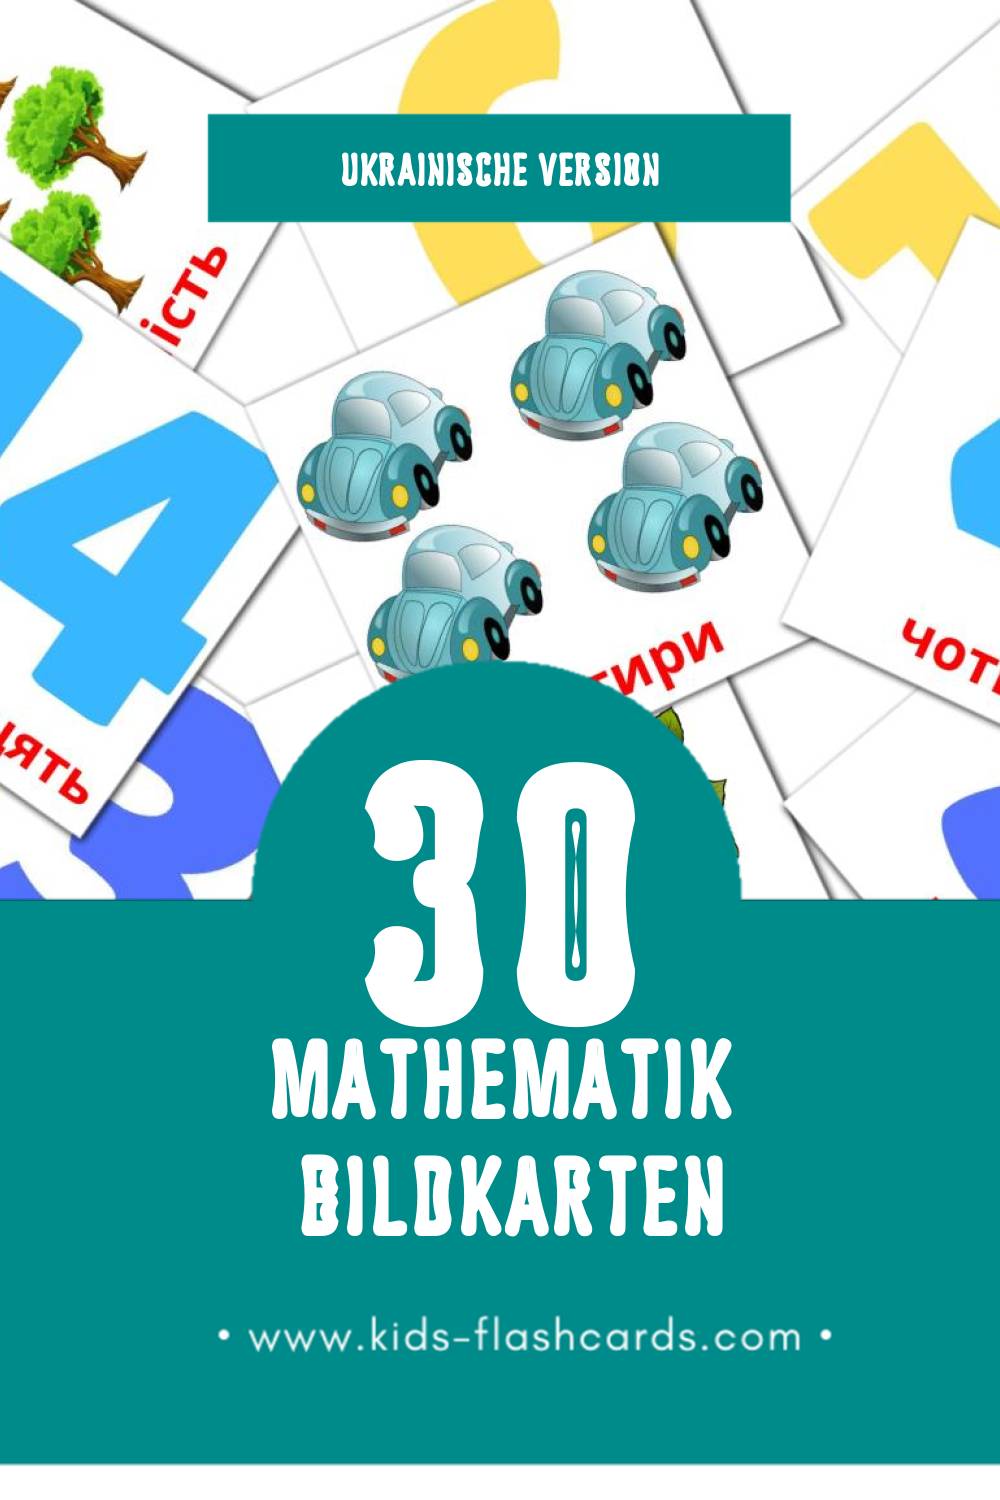 Visual Математика Flashcards für Kleinkinder (30 Karten in Ukrainisch)